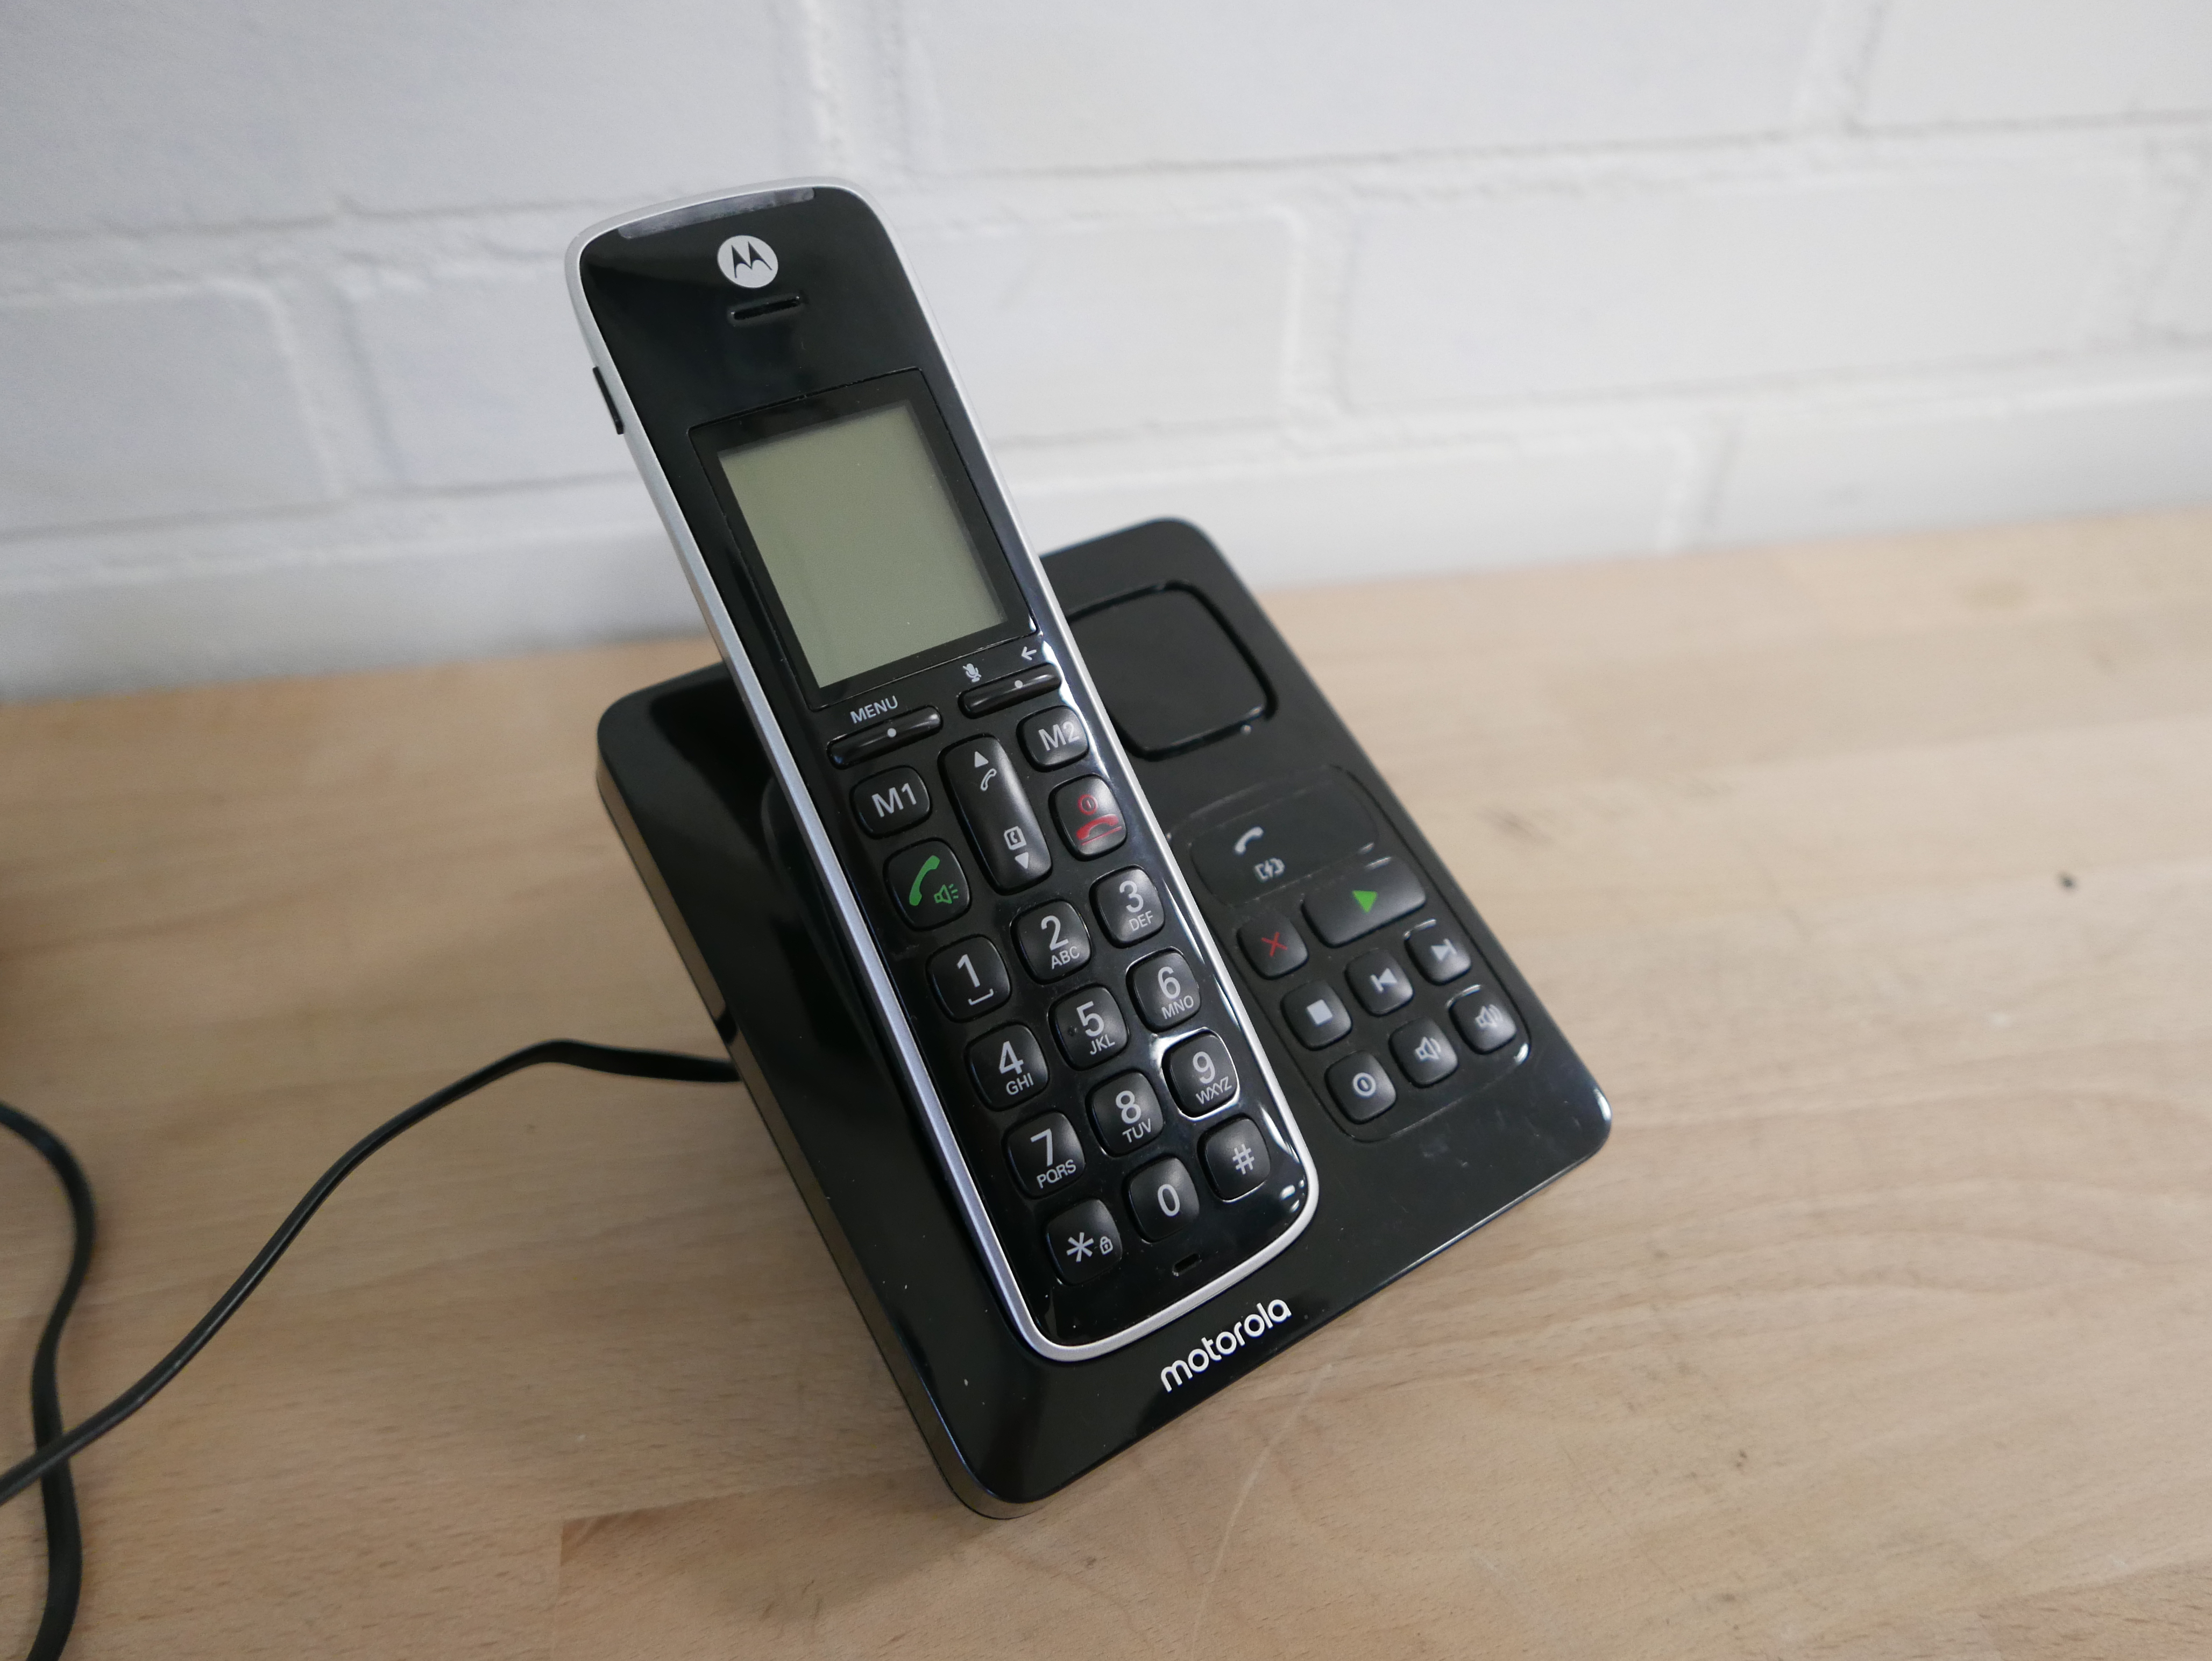 Motorola telefoon unit met antwoord apparaat CD211